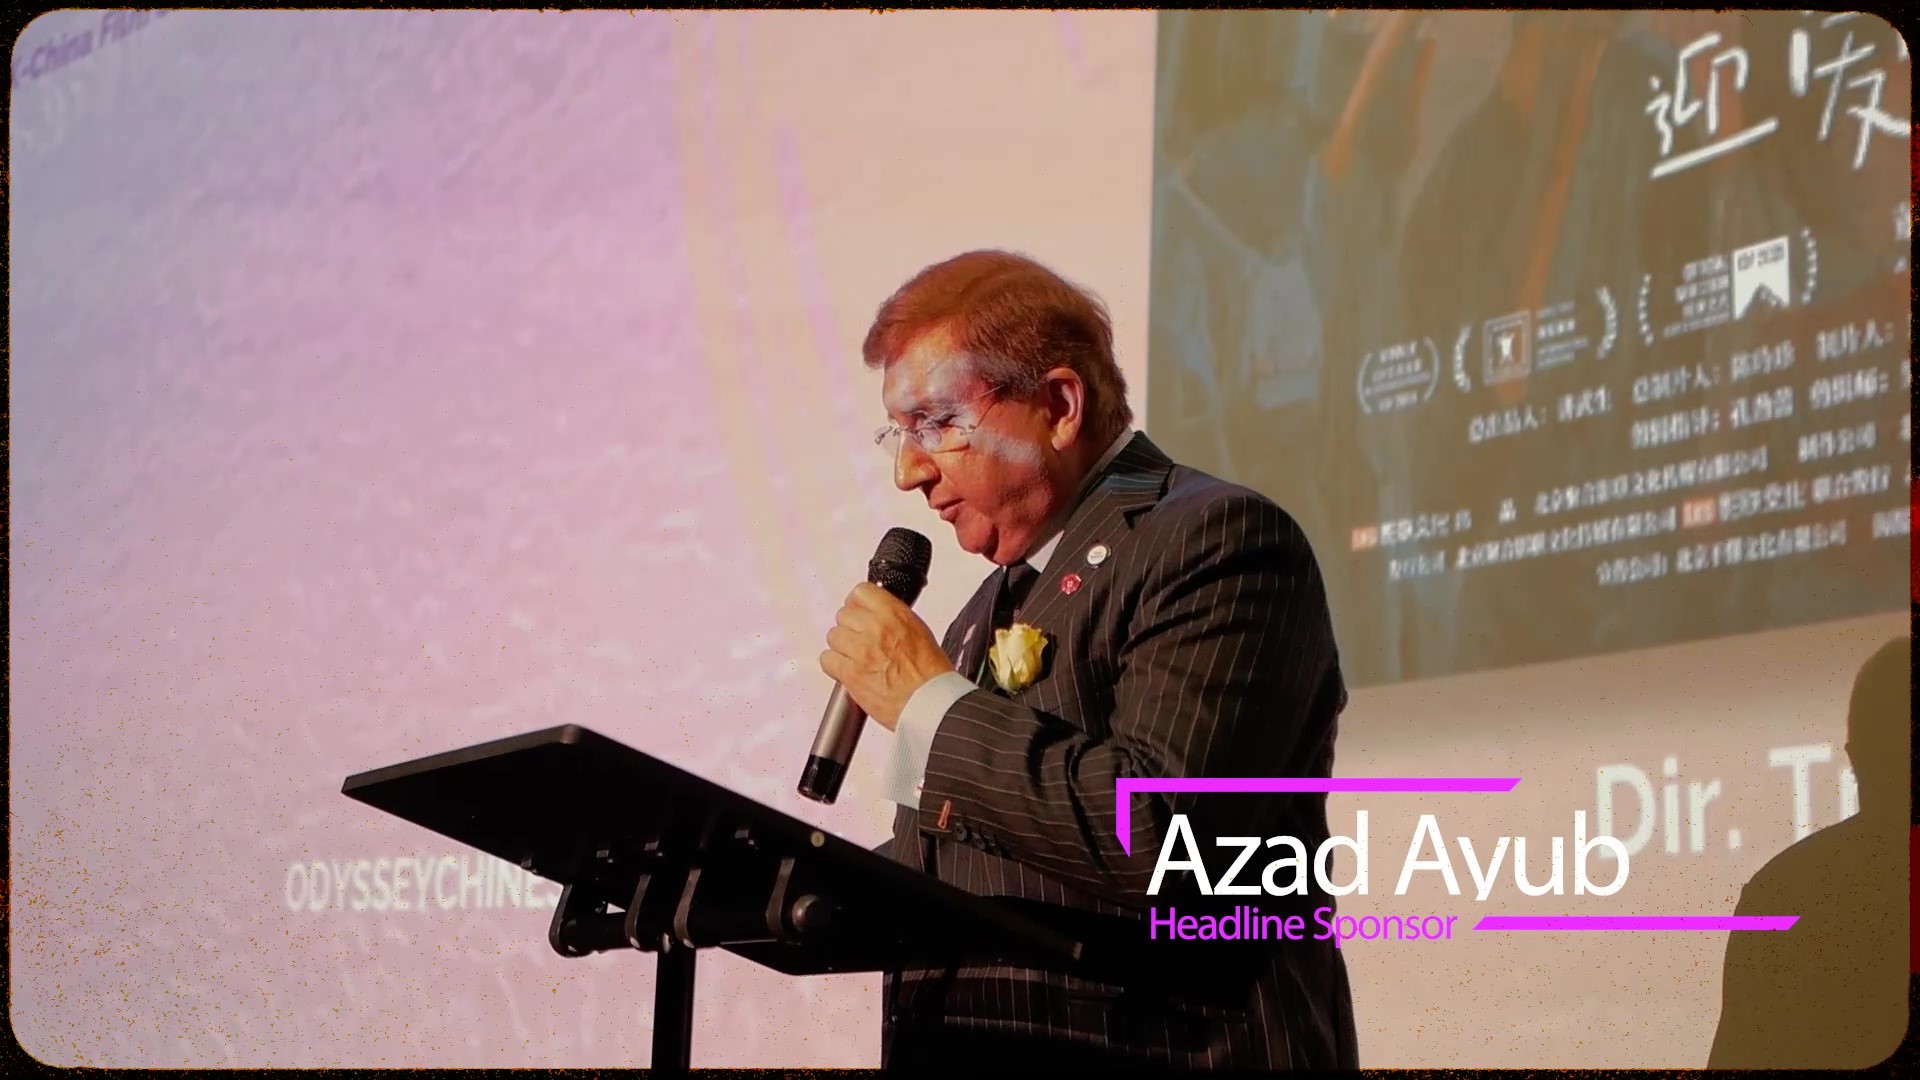 Azad Ayub Ltd. sponsored festival Odyssey: a Chinese cinema season closed its curtains